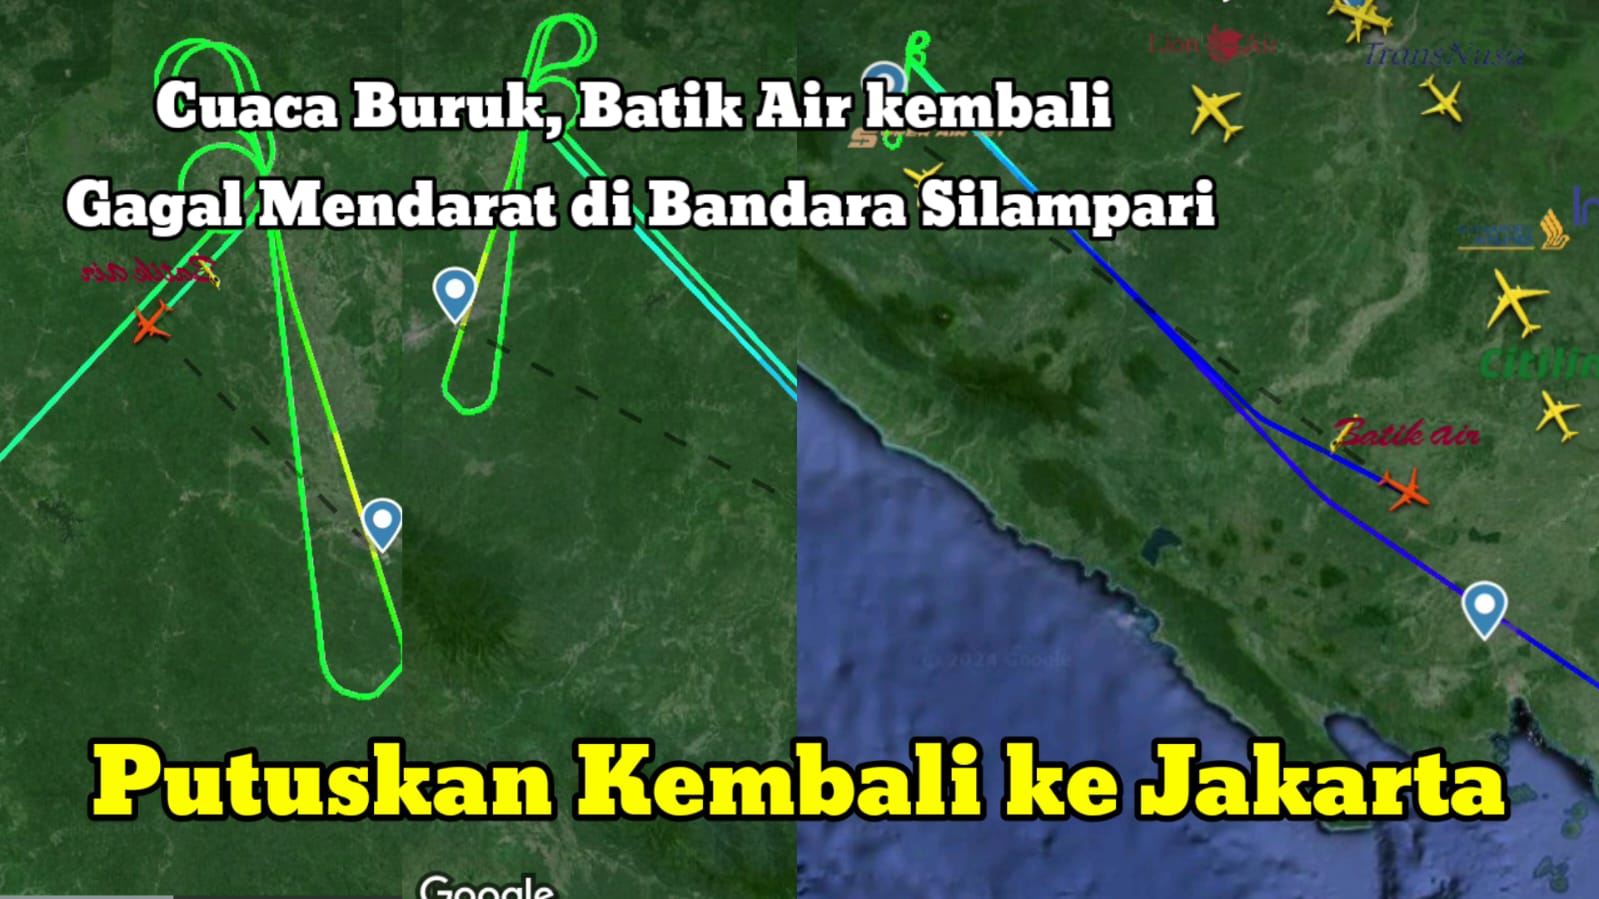 BREAKINGNEWS! Cuaca Buruk, Batik Air kembali Gagal Mendarat di Bandara Silampari dan Kembali ke Jakarta